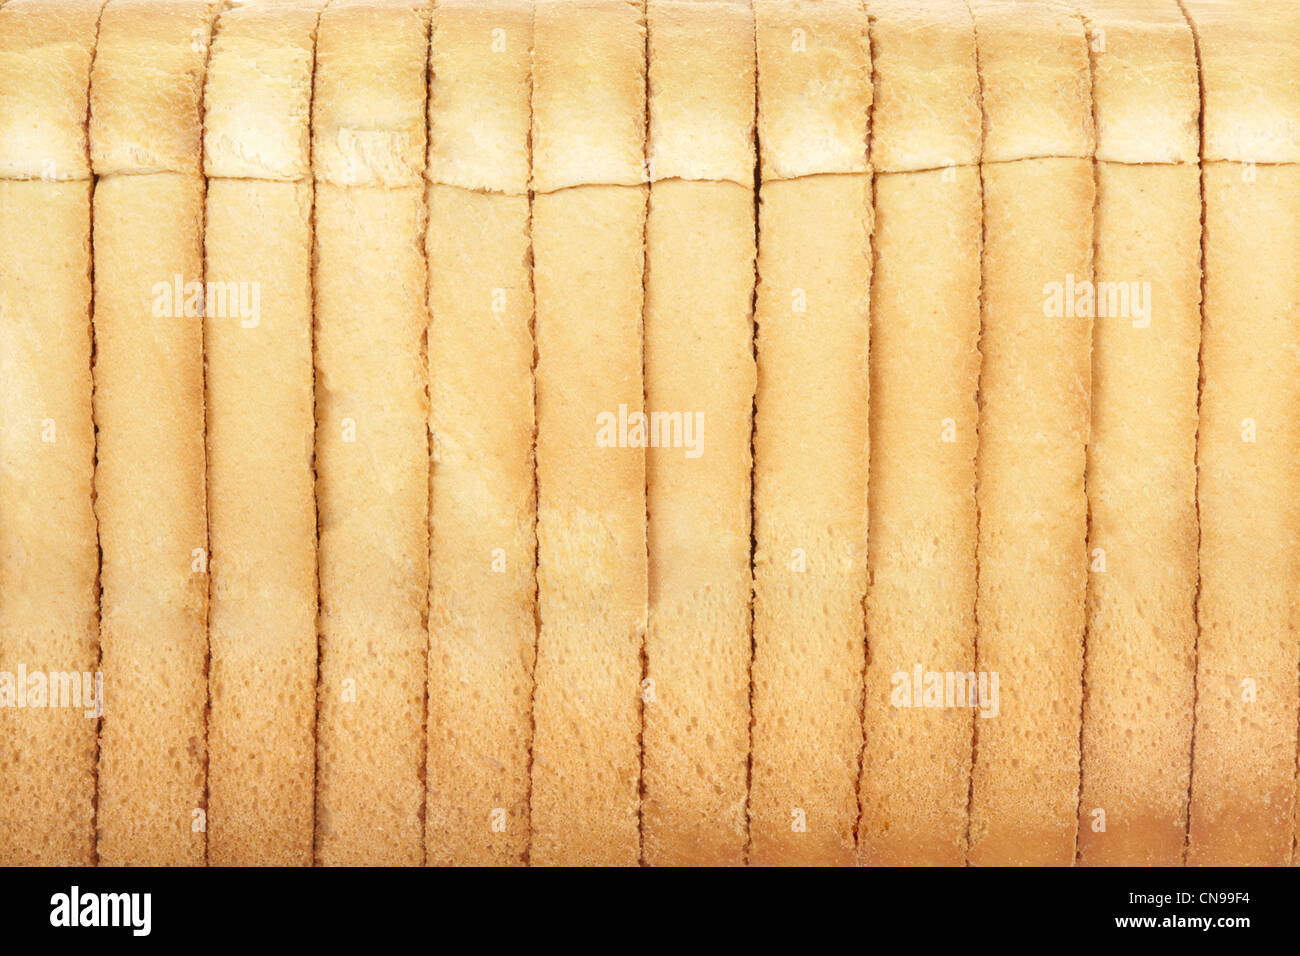 Rusk Brot Textur Hintergrund Stockfoto